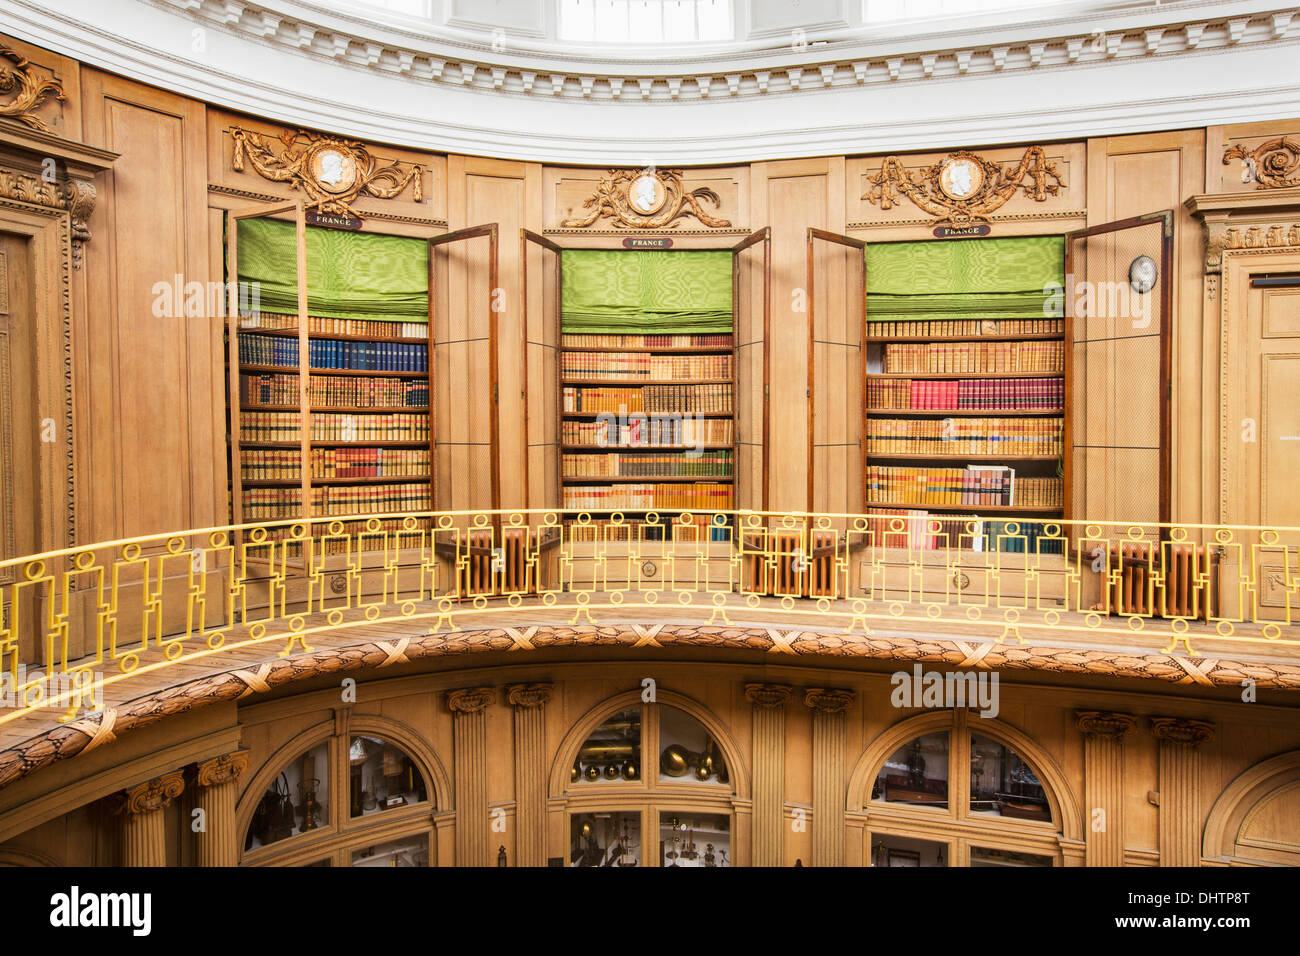 Niederlande, Haarlem, Teylers Museum zugänglich für die Öffentlichkeit seit 1784. Blick auf Bücherregale in ovaler Saal. Stockfoto